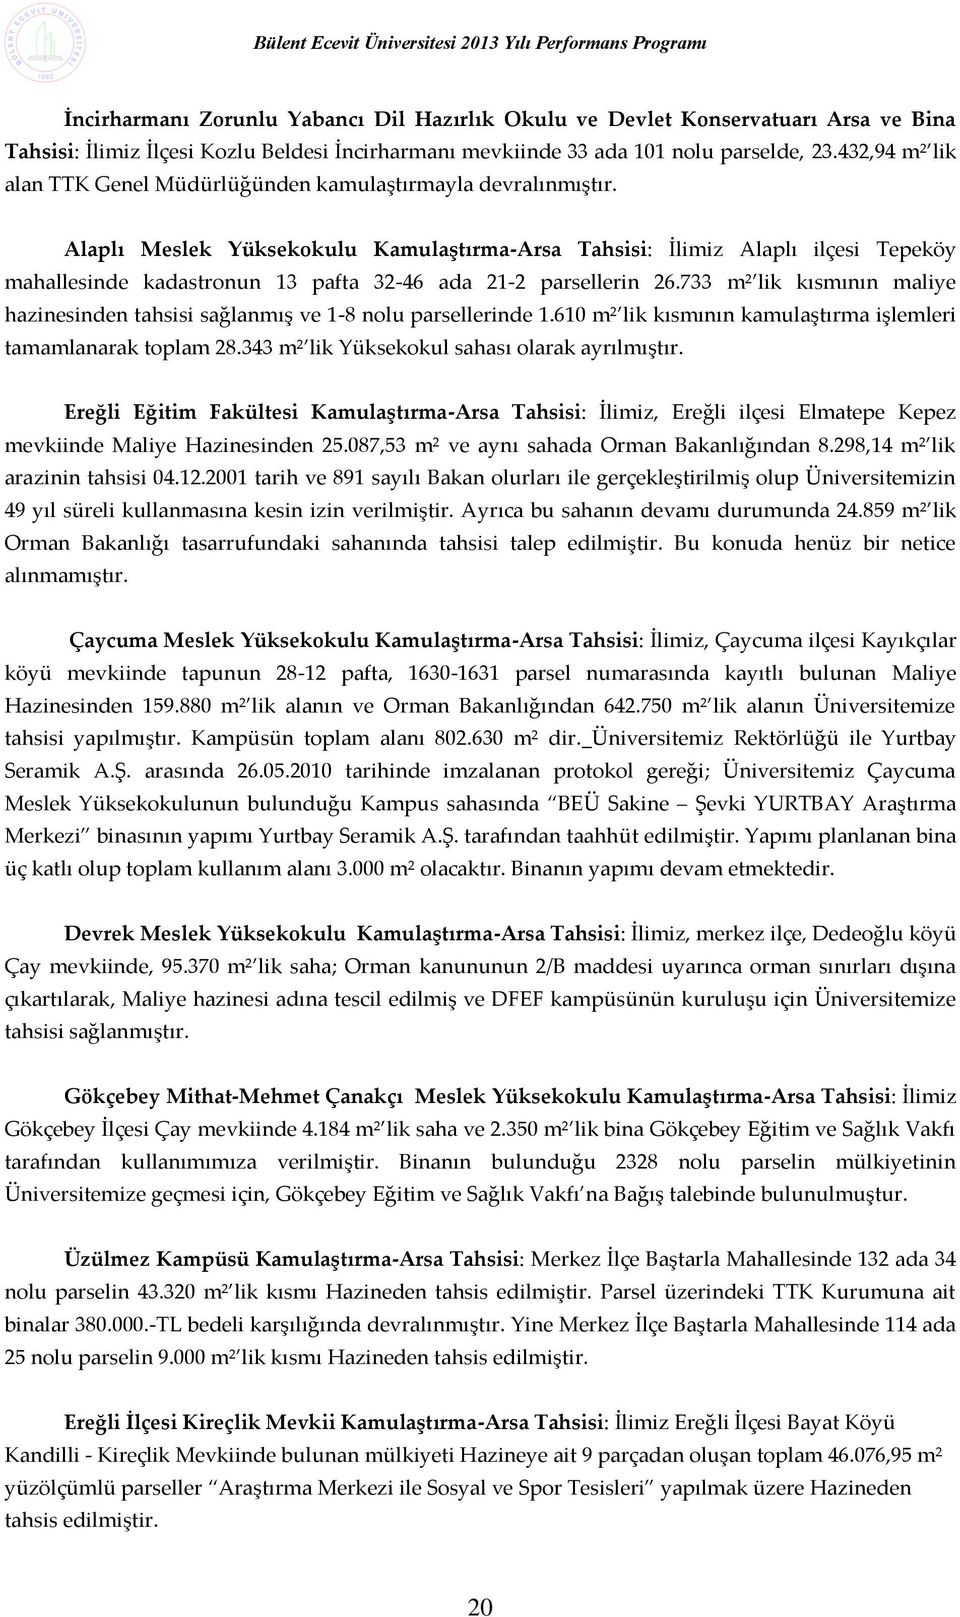 Alaplı Meslek Yüksekokulu Kamulaştırma-Arsa Tahsisi: İlimiz Alaplı ilçesi Tepeköy mahallesinde kadastronun 13 pafta 32-46 ada 21-2 parsellerin 26.